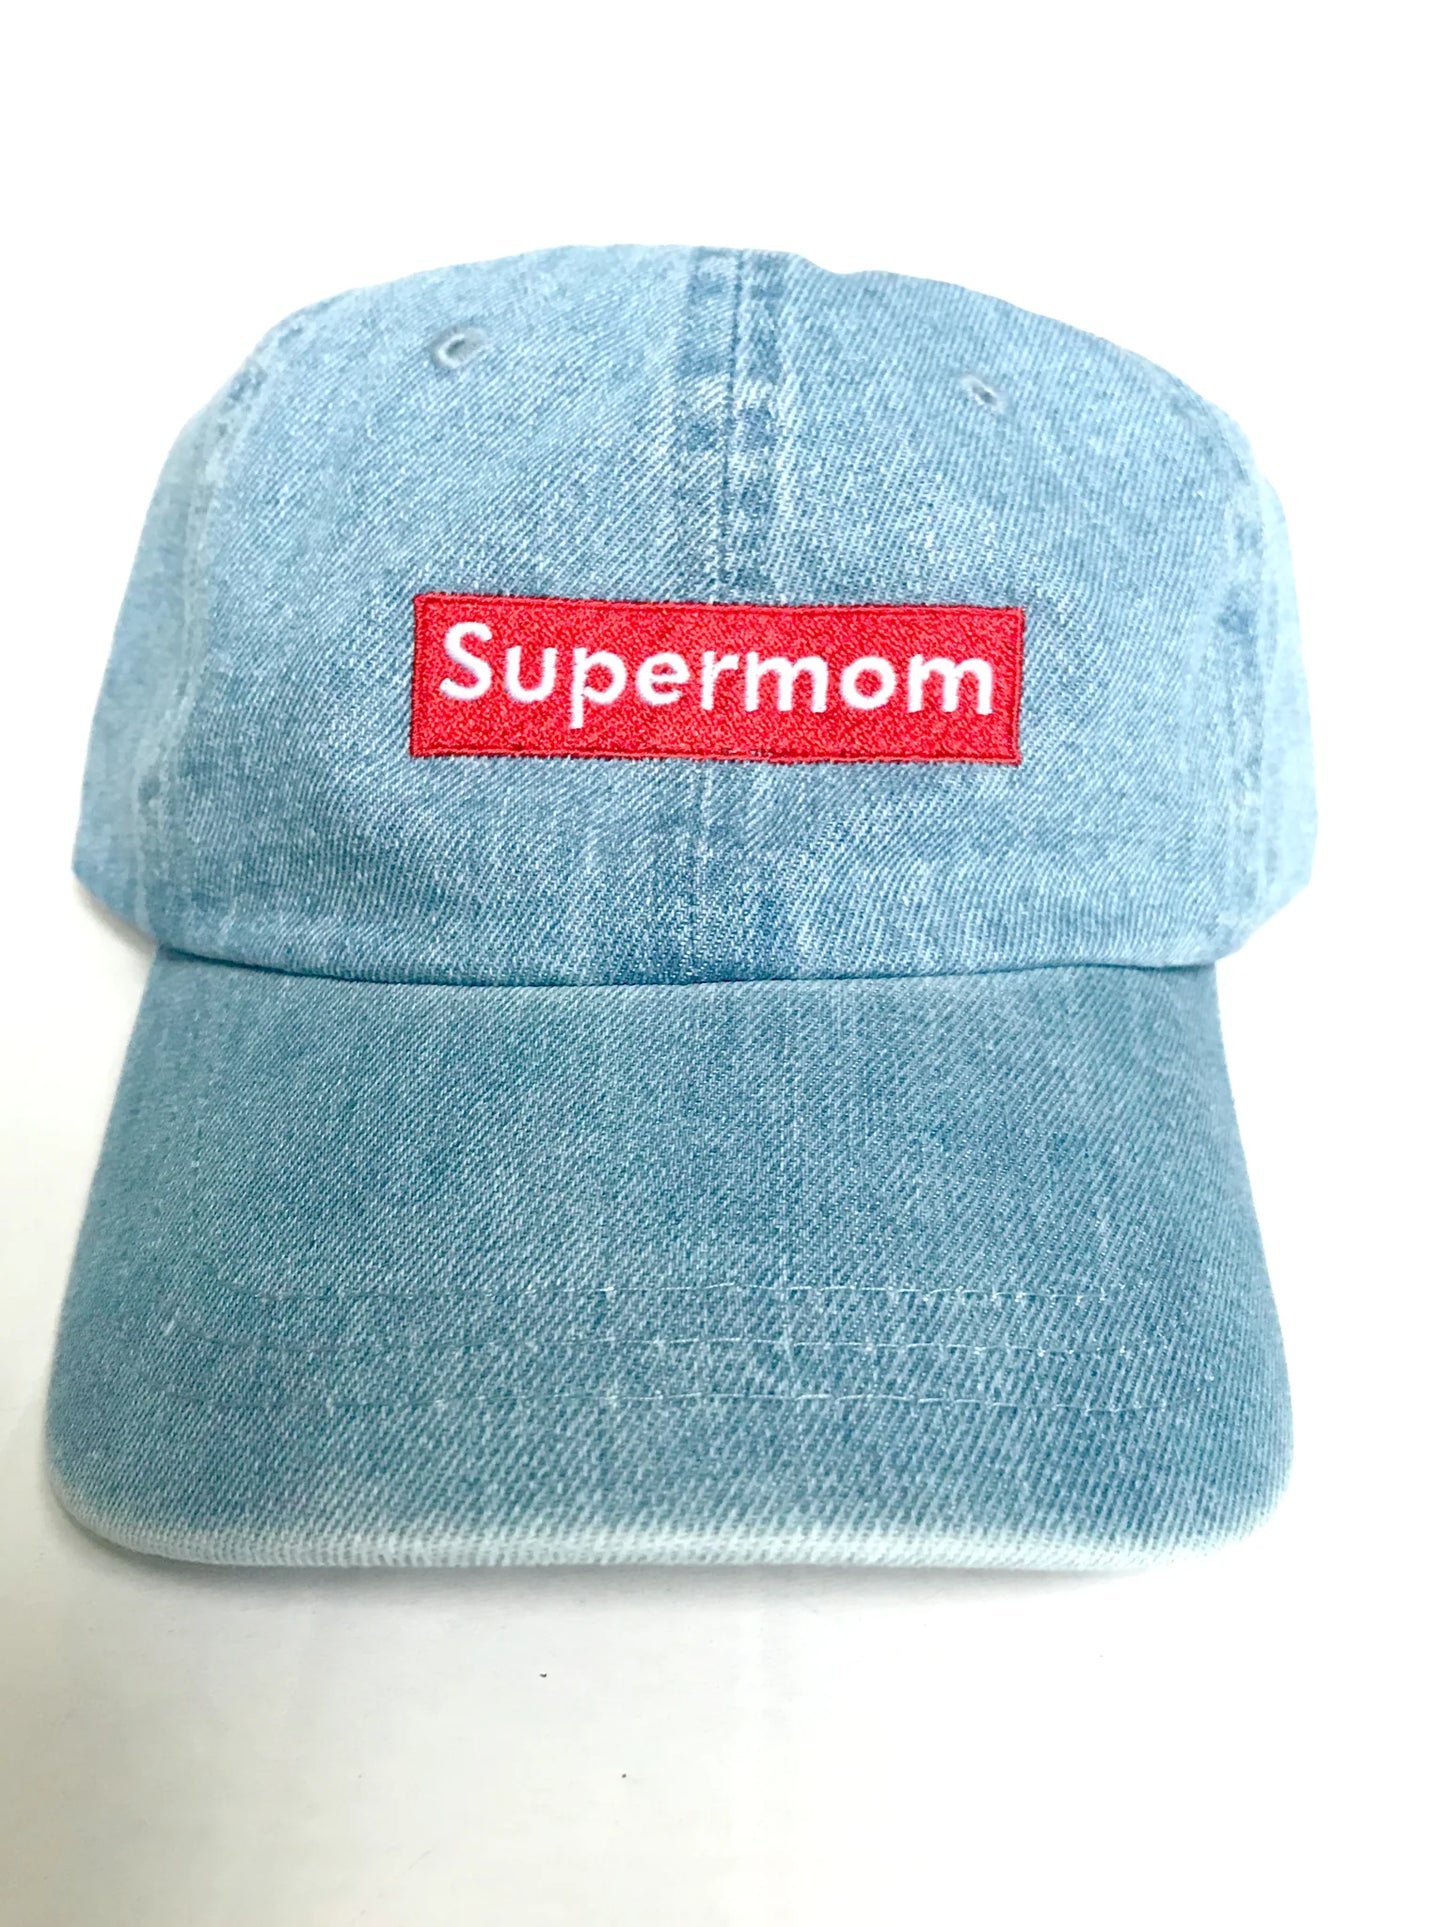 Supermom Culture Demin Hat